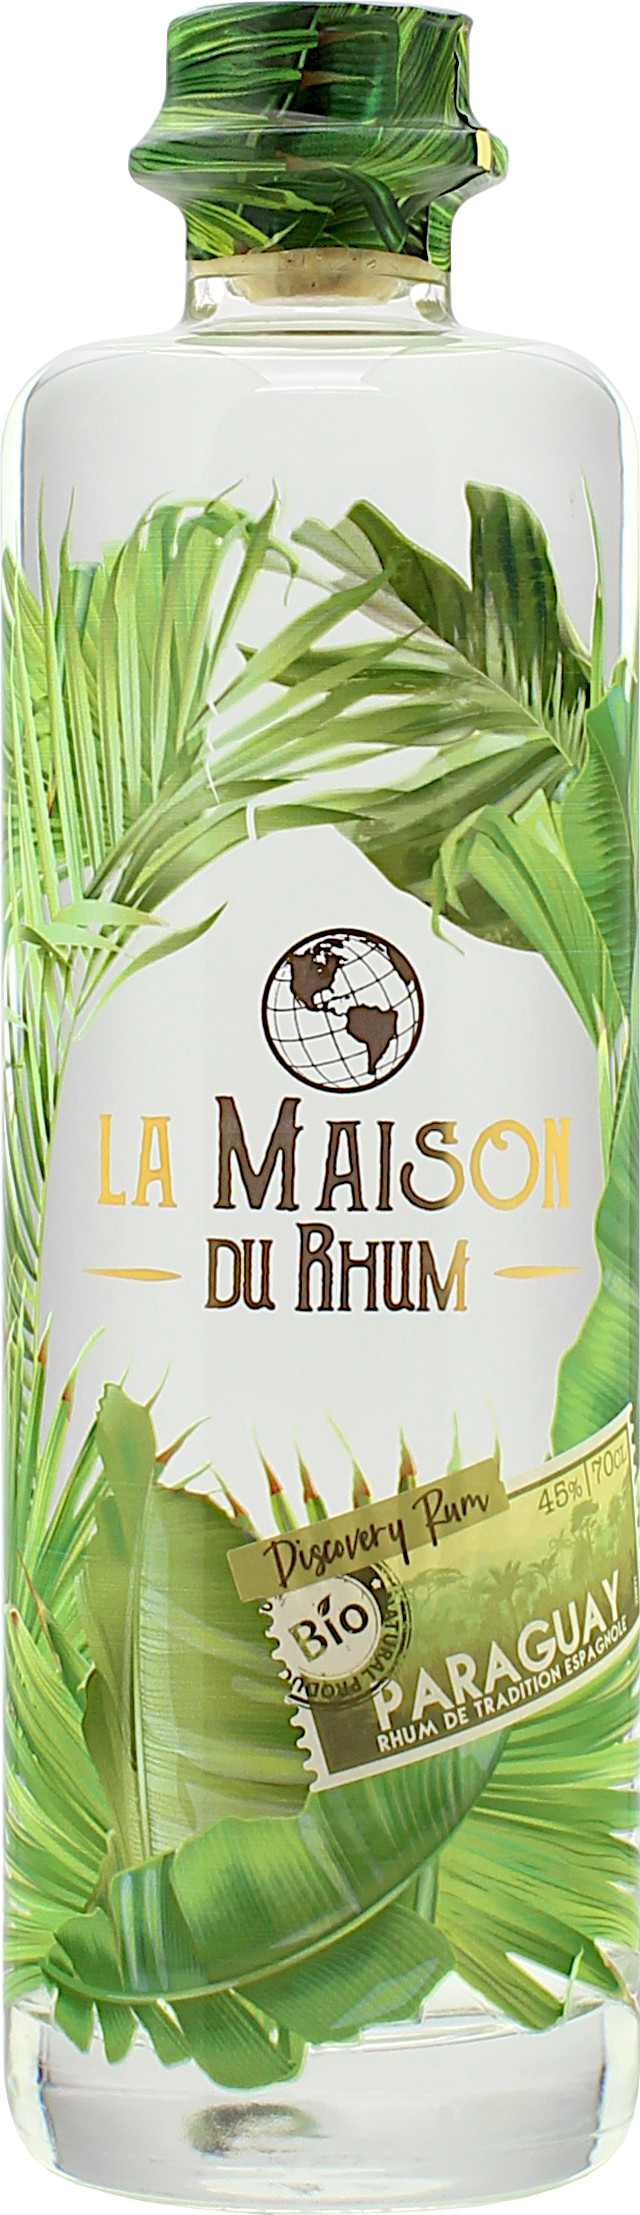 La Maison Du Rhum Discovery Rum Paraguay 45.0% 0,7l